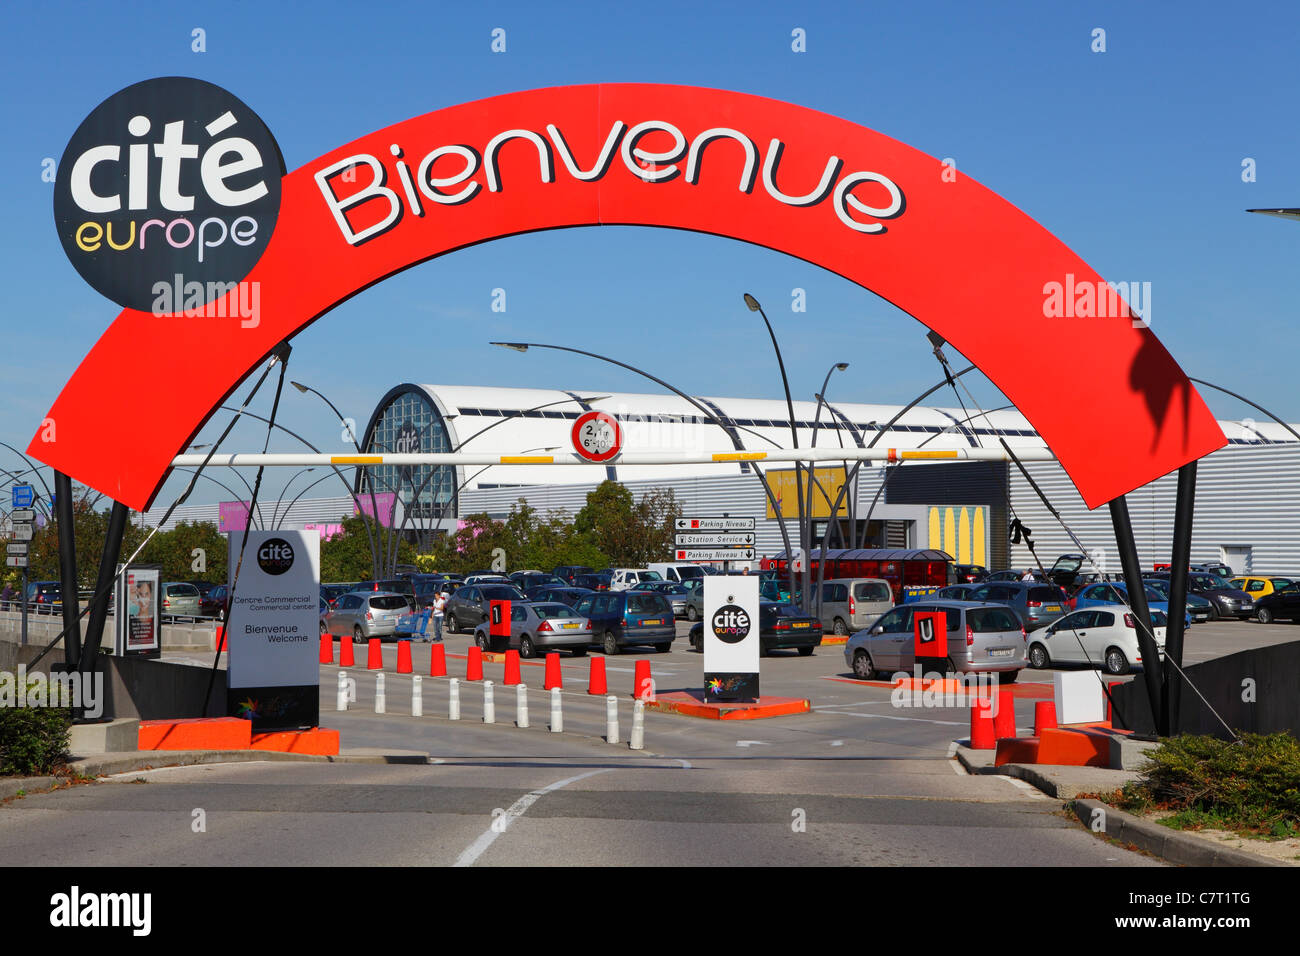 Cite Europe shopping centre Calais France Stock Photo